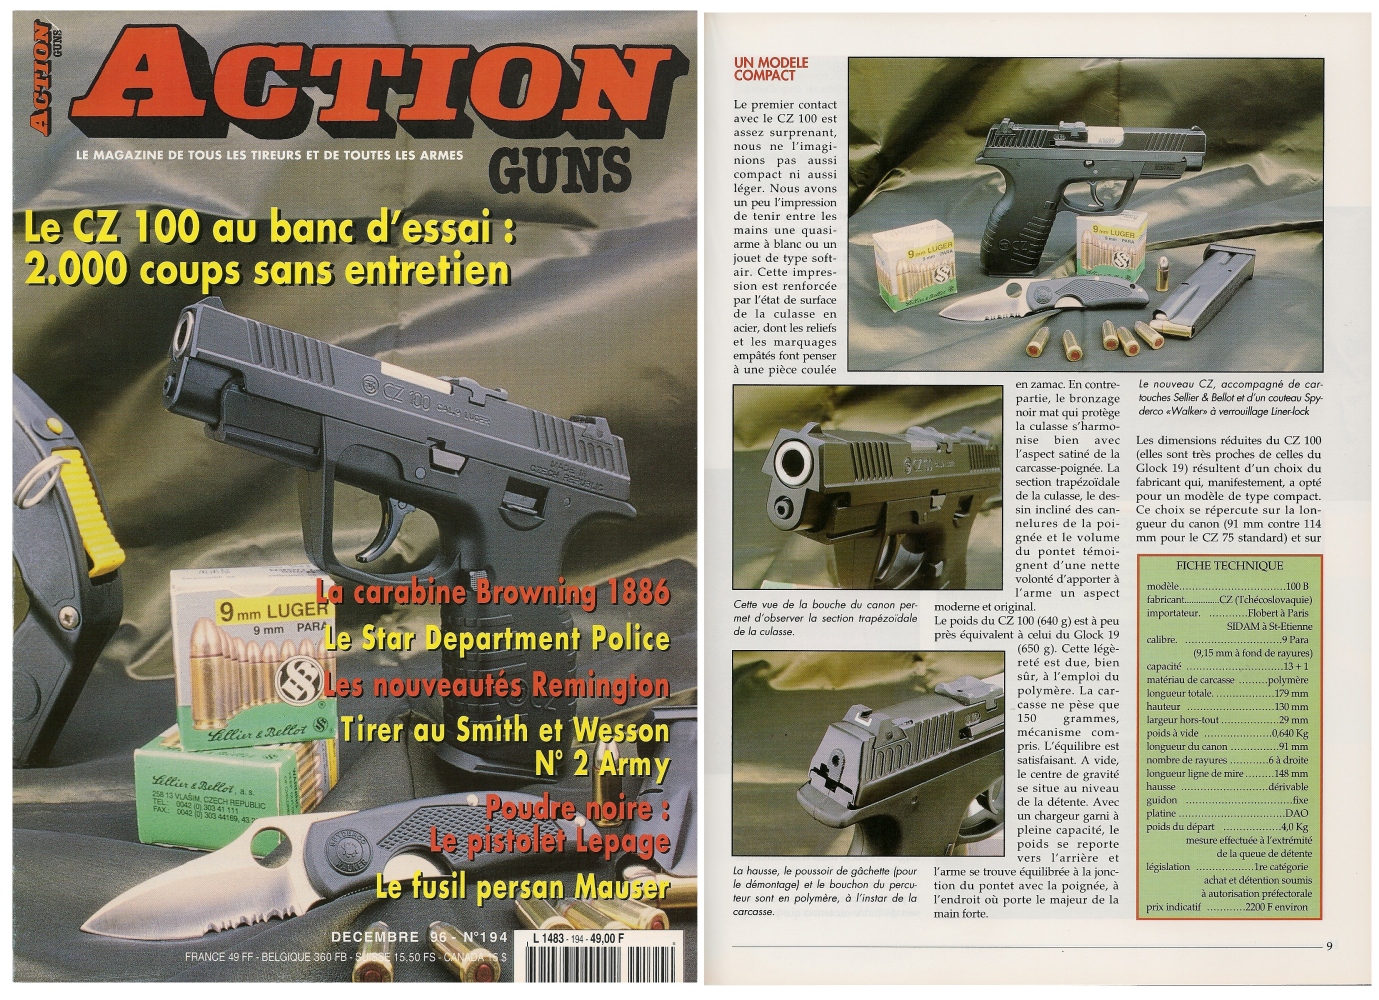 Le banc d'essai du pistolet CZ 100 a été publié sur 7 pages dans le magazine Action Guns n°194 (décembre 1996).